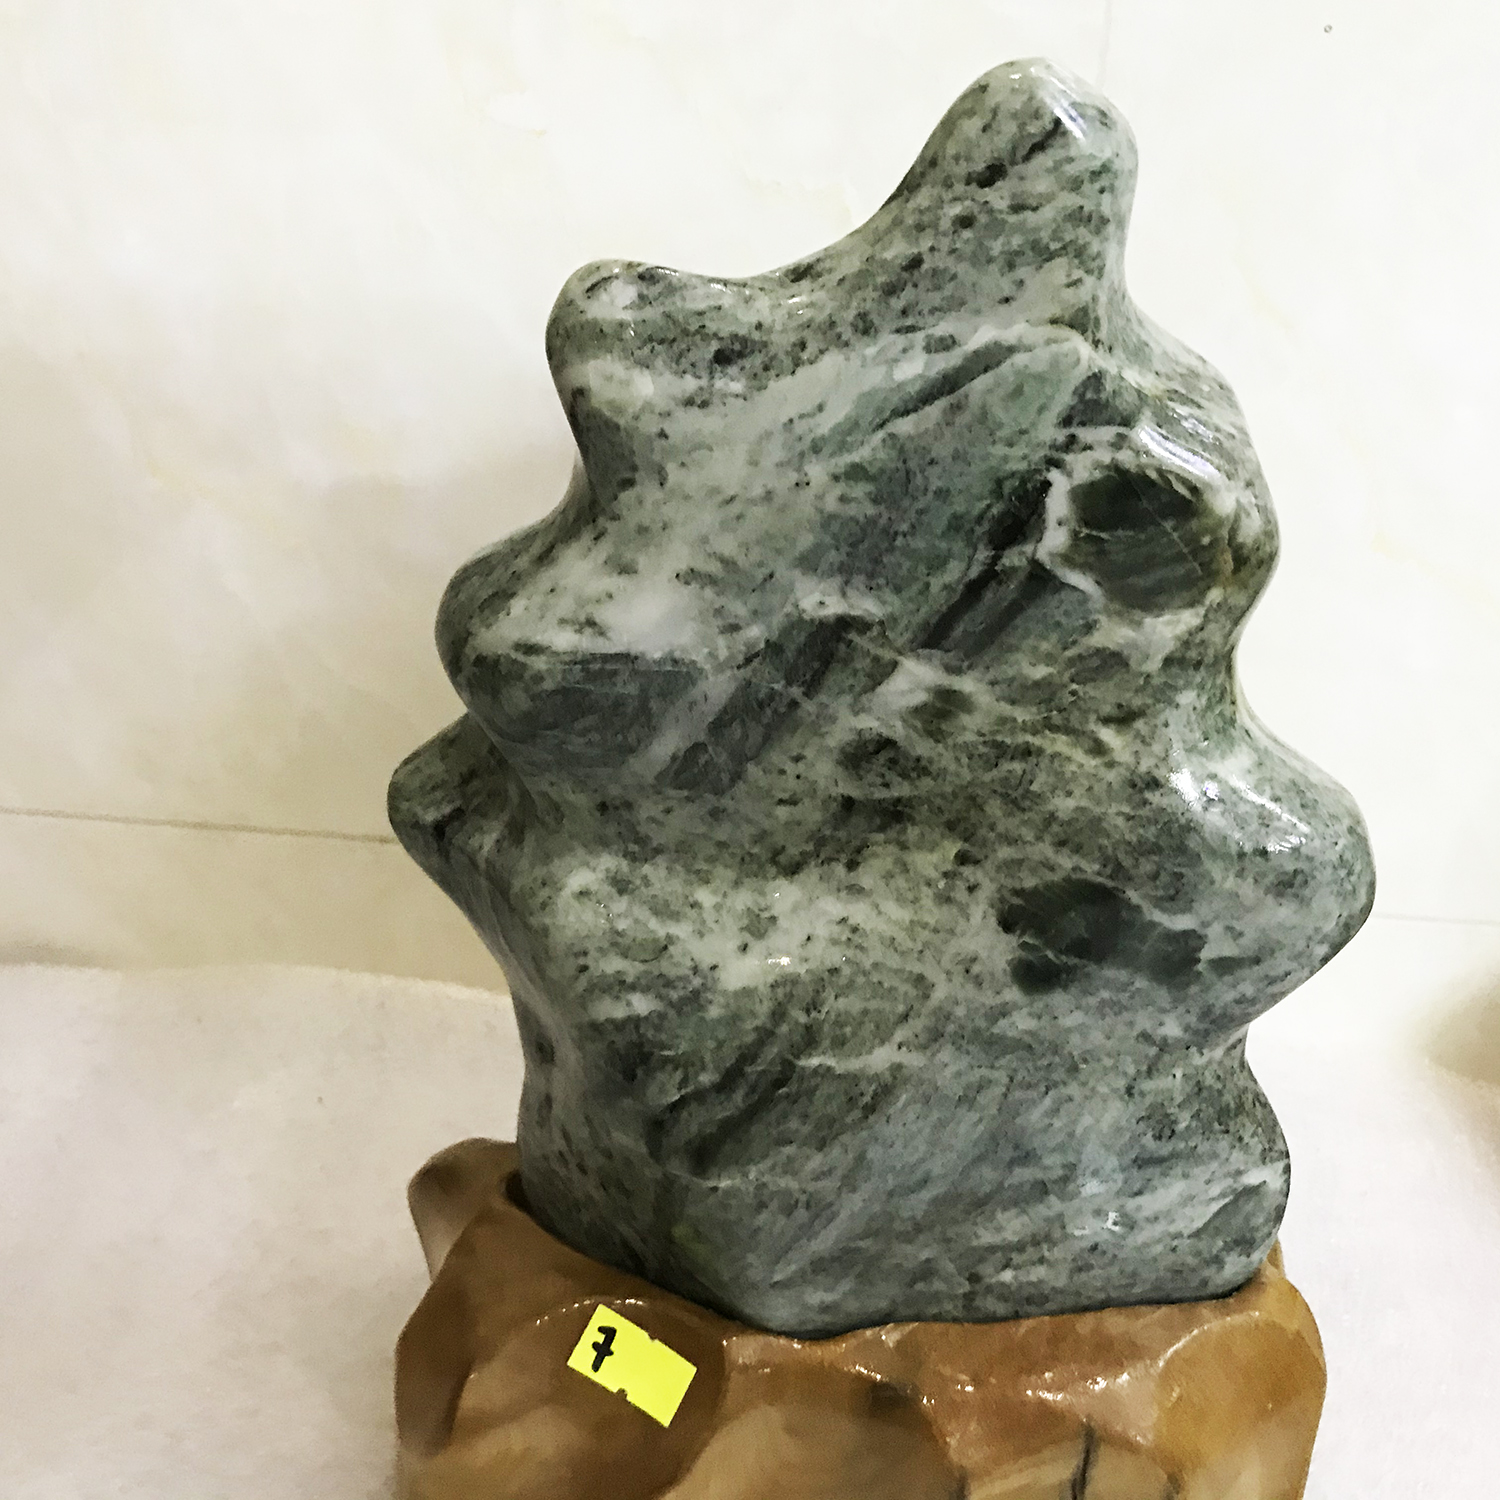 Cây đá phong thủy tự nhiên màu xanh lá đậm Cao 30 rộng 19 nặng 4 kg cả chân đế gỗ rừng